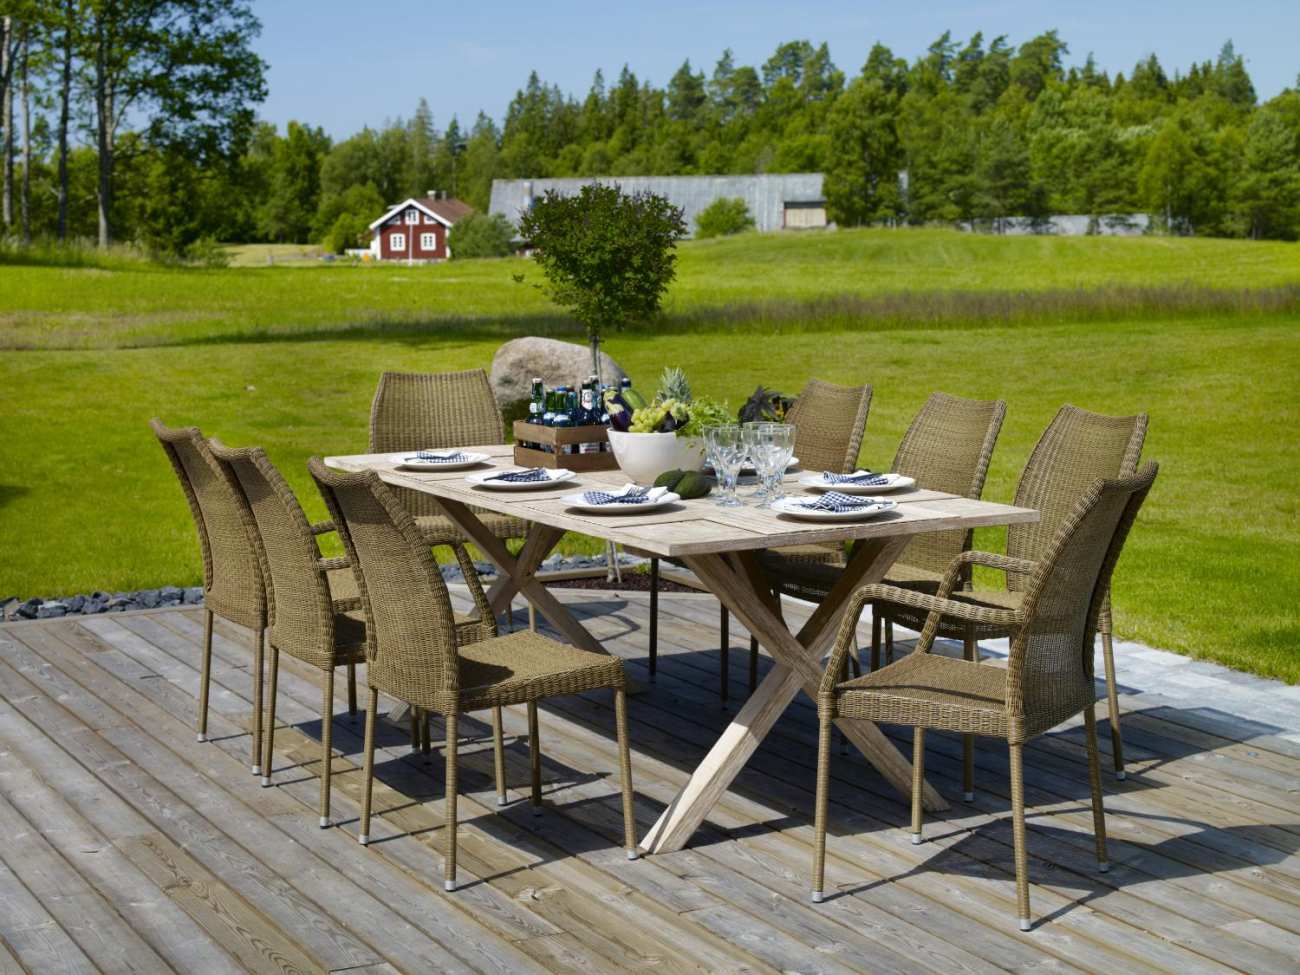 Der Gartenesstisch Brutus überzeugt mit seinem modernen Design. Gefertigt wurde die Tischplatte aus Akazienholz, welche einen natürlichen Farbton besitzt. Das Gestell ist aus Akazienholz und hat eine natürliche Farbe. Der Tisch besitzt eine Länge von 220 